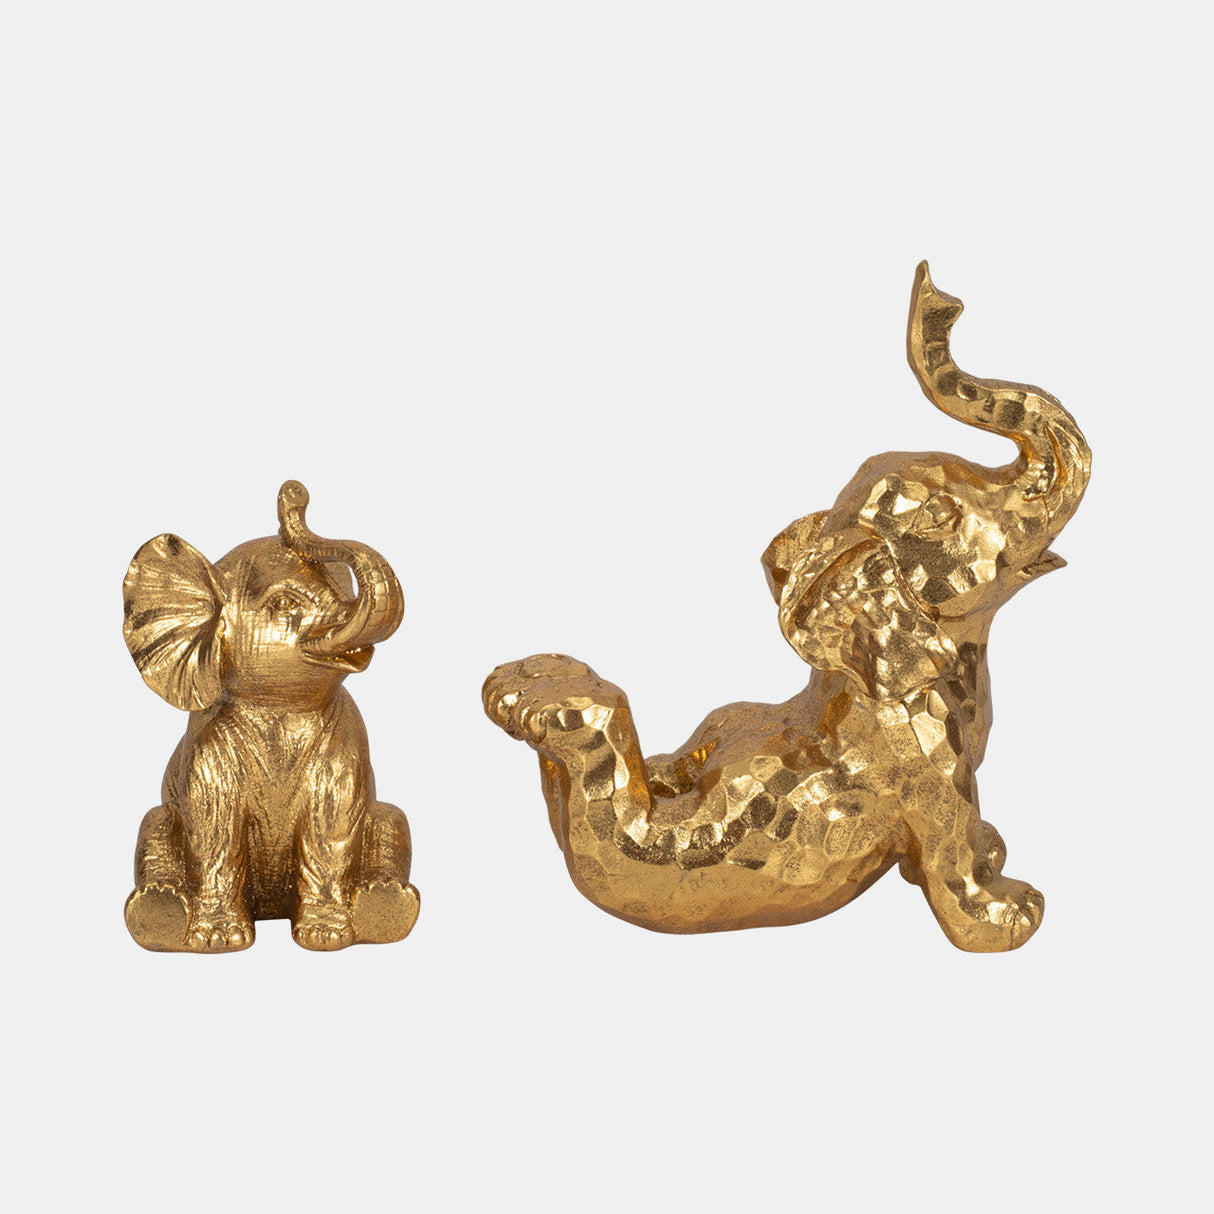 10" Yoga Elephant, Gold